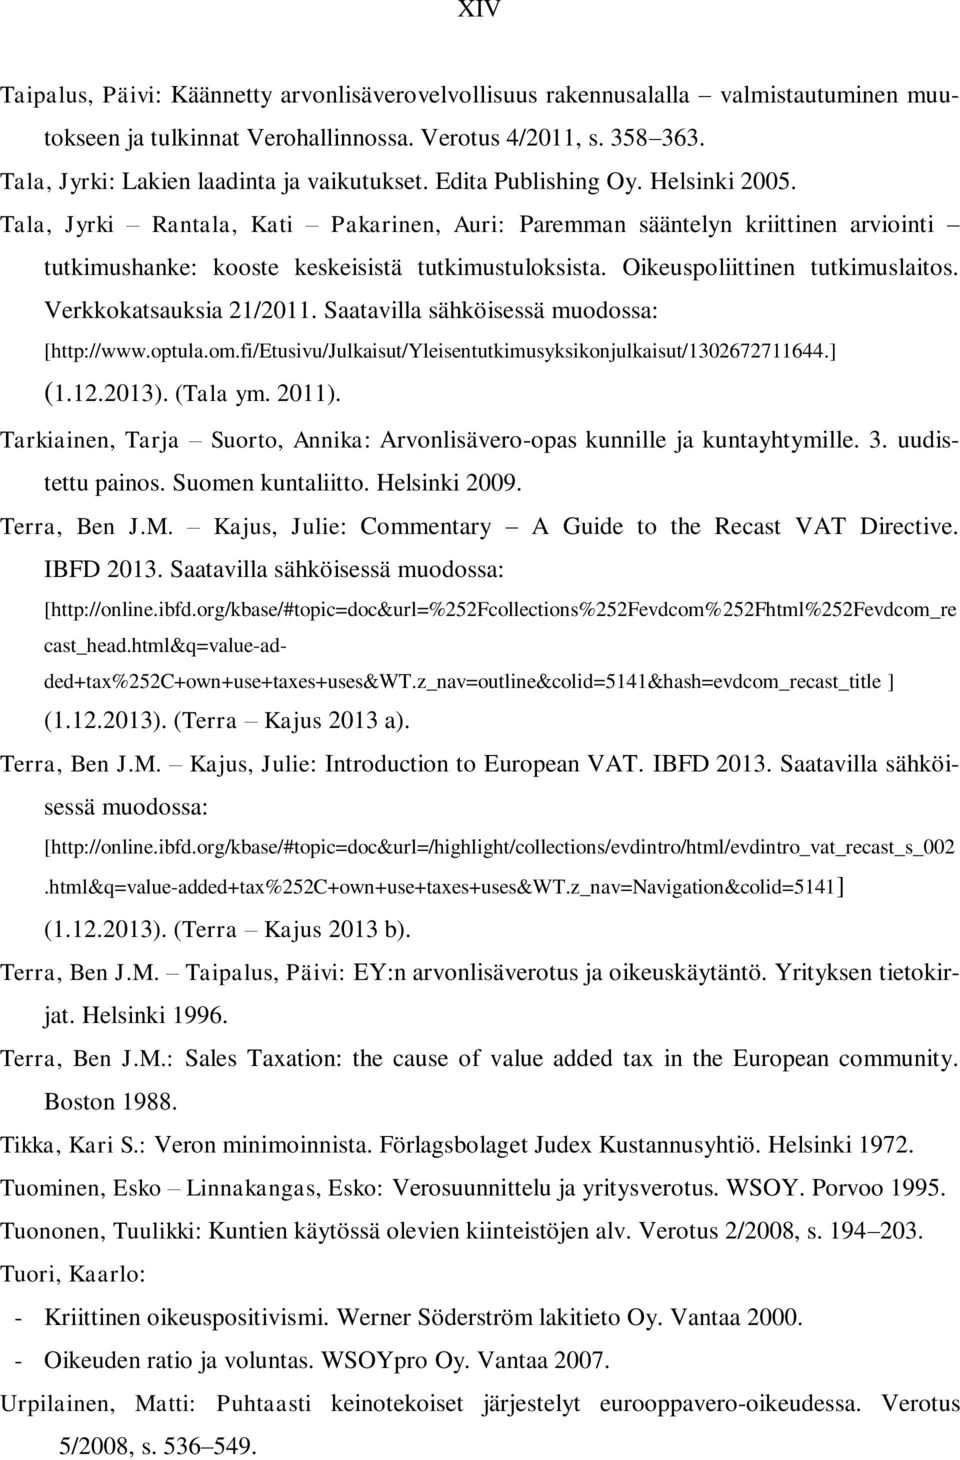 Tala, Jyrki Rantala, Kati Pakarinen, Auri: Paremman sääntelyn kriittinen arviointi tutkimushanke: kooste keskeisistä tutkimustuloksista. Oikeuspoliittinen tutkimuslaitos. Verkkokatsauksia 21/2011.